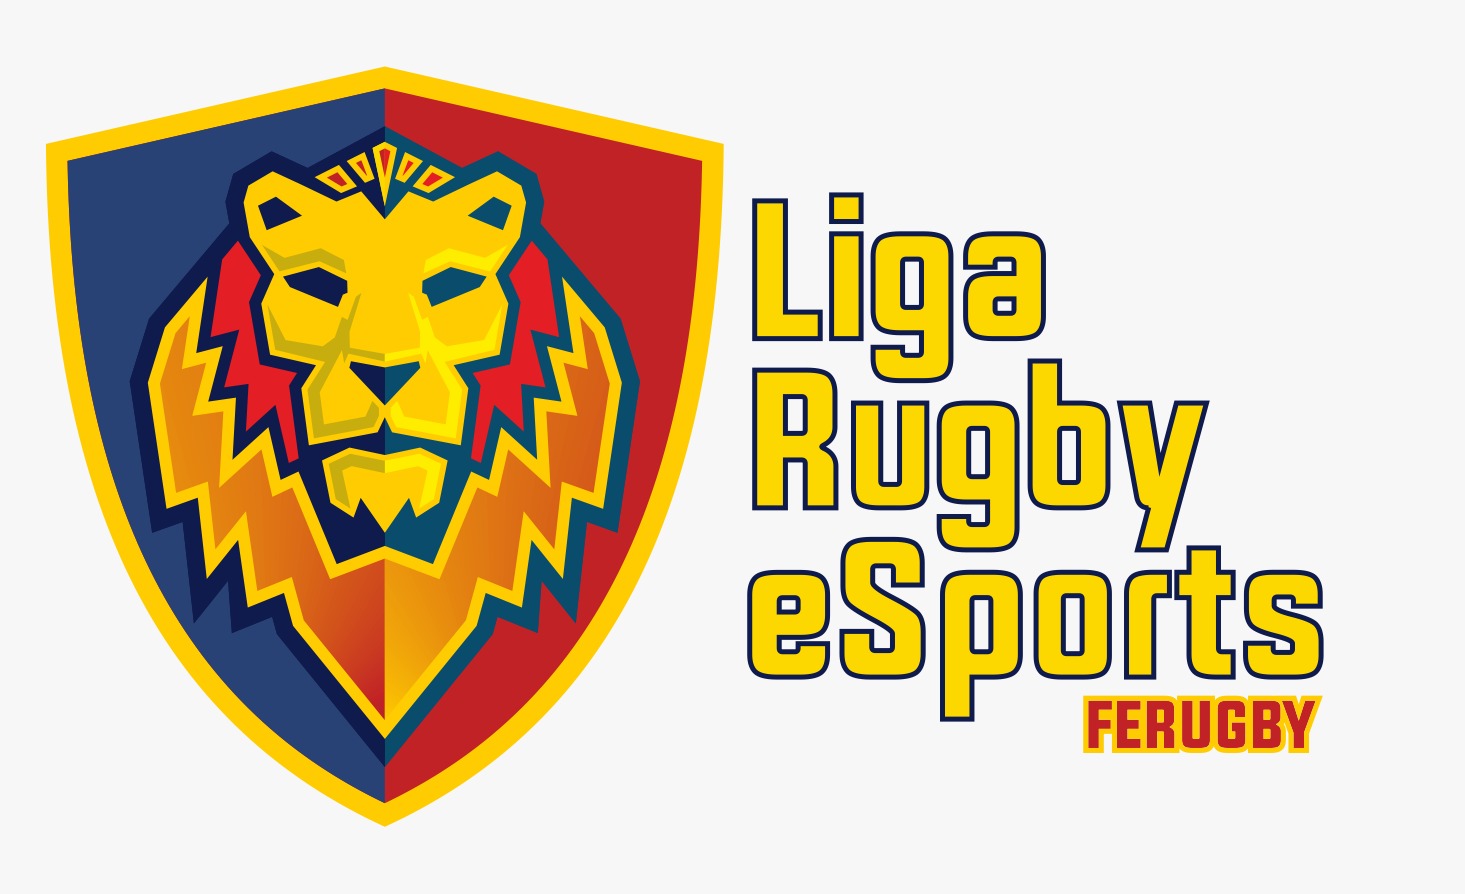 Empieza la primera Liga Rugby eSports, una idea pionera en el deporte español